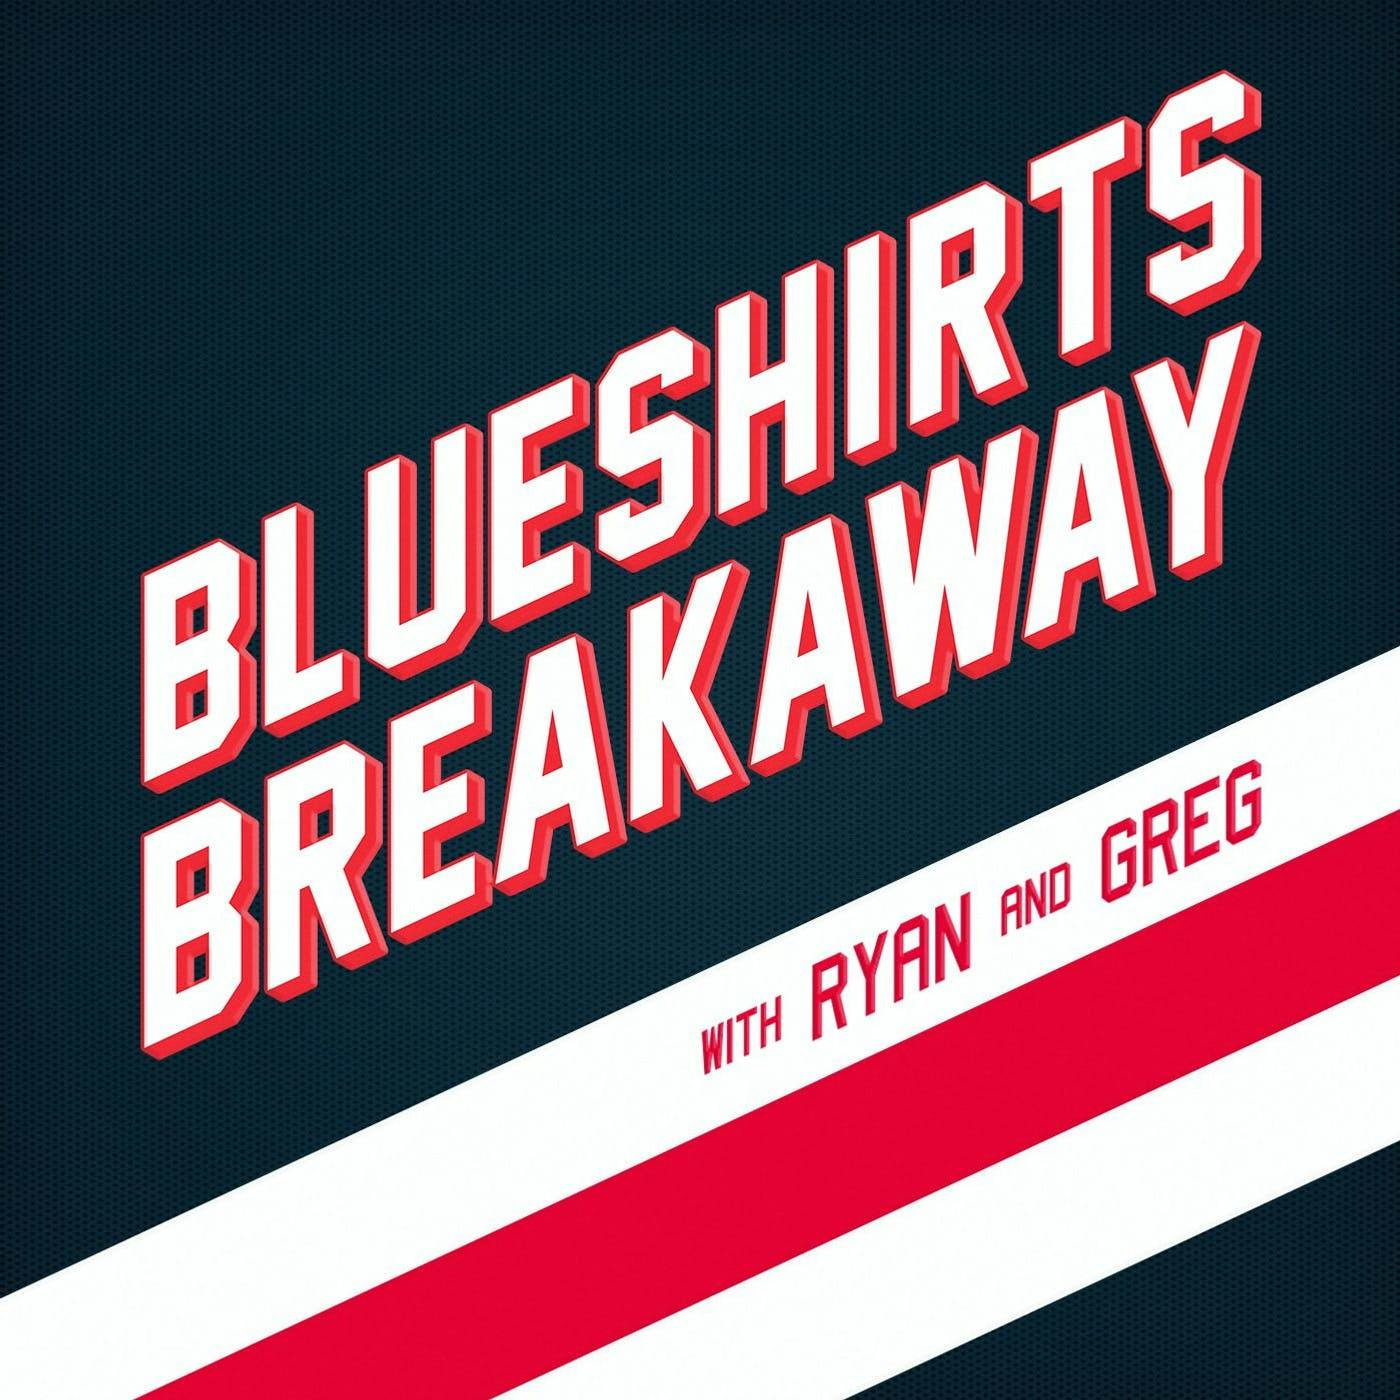 Blueshirts Breakaway EP 145 - The Rangers Forum